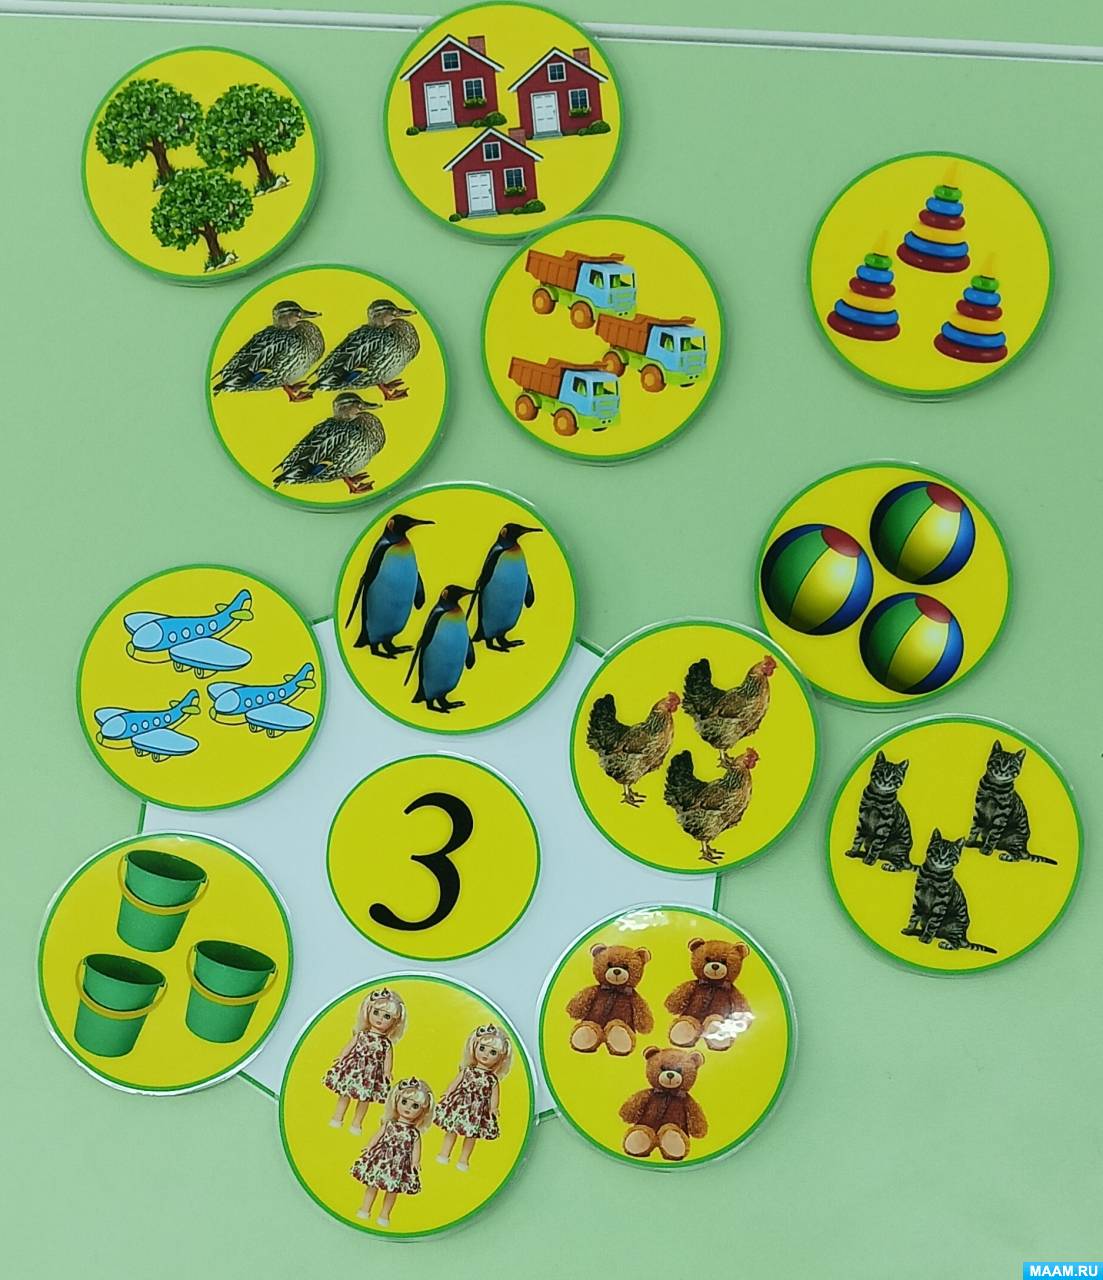 Развивающие игры и игрушки для детей от 0 до 3 лет